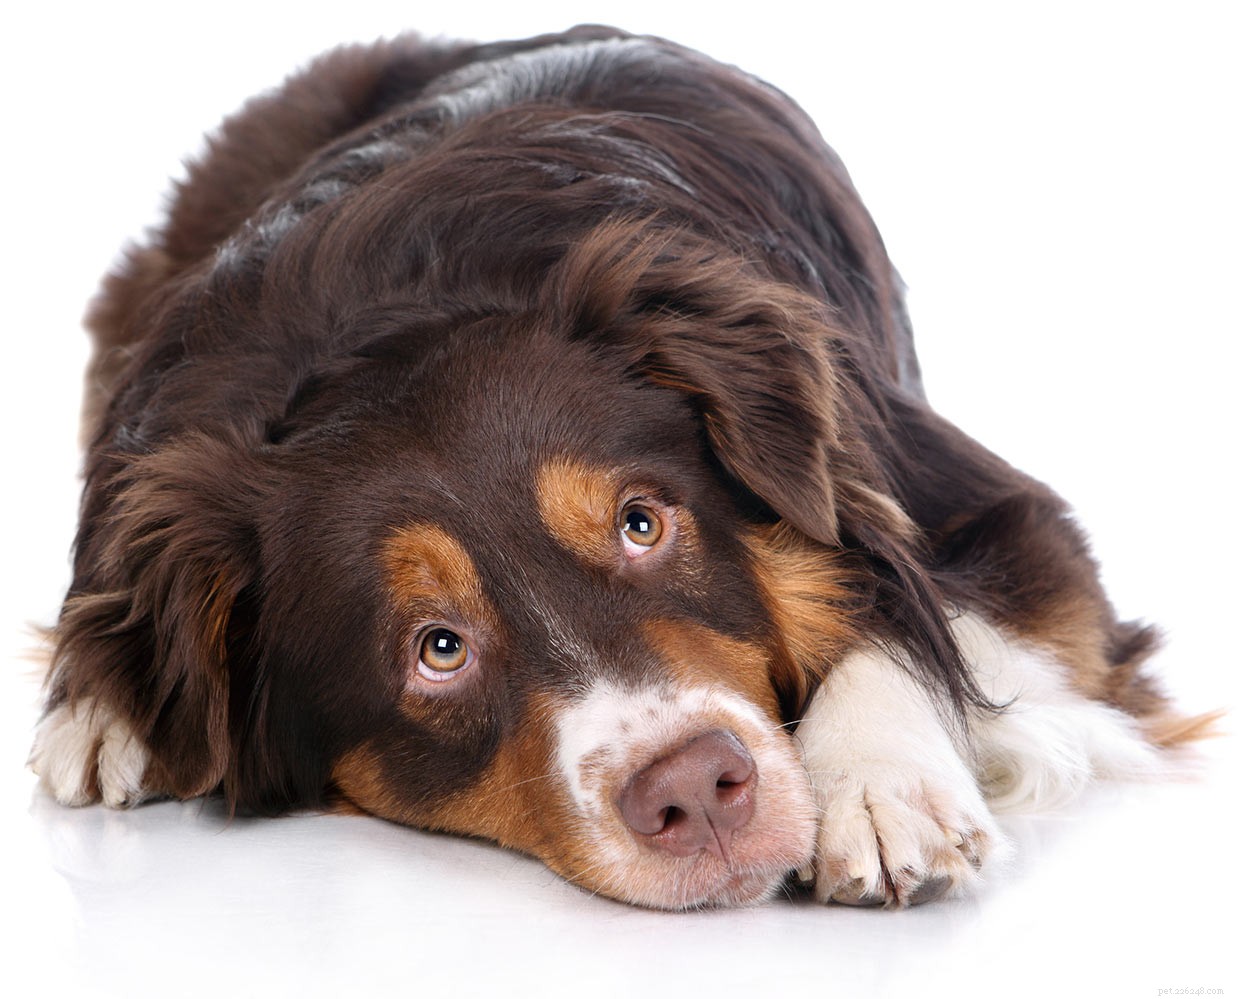 Waterstofperoxide voor honden – waar kan ik het veilig voor gebruiken?